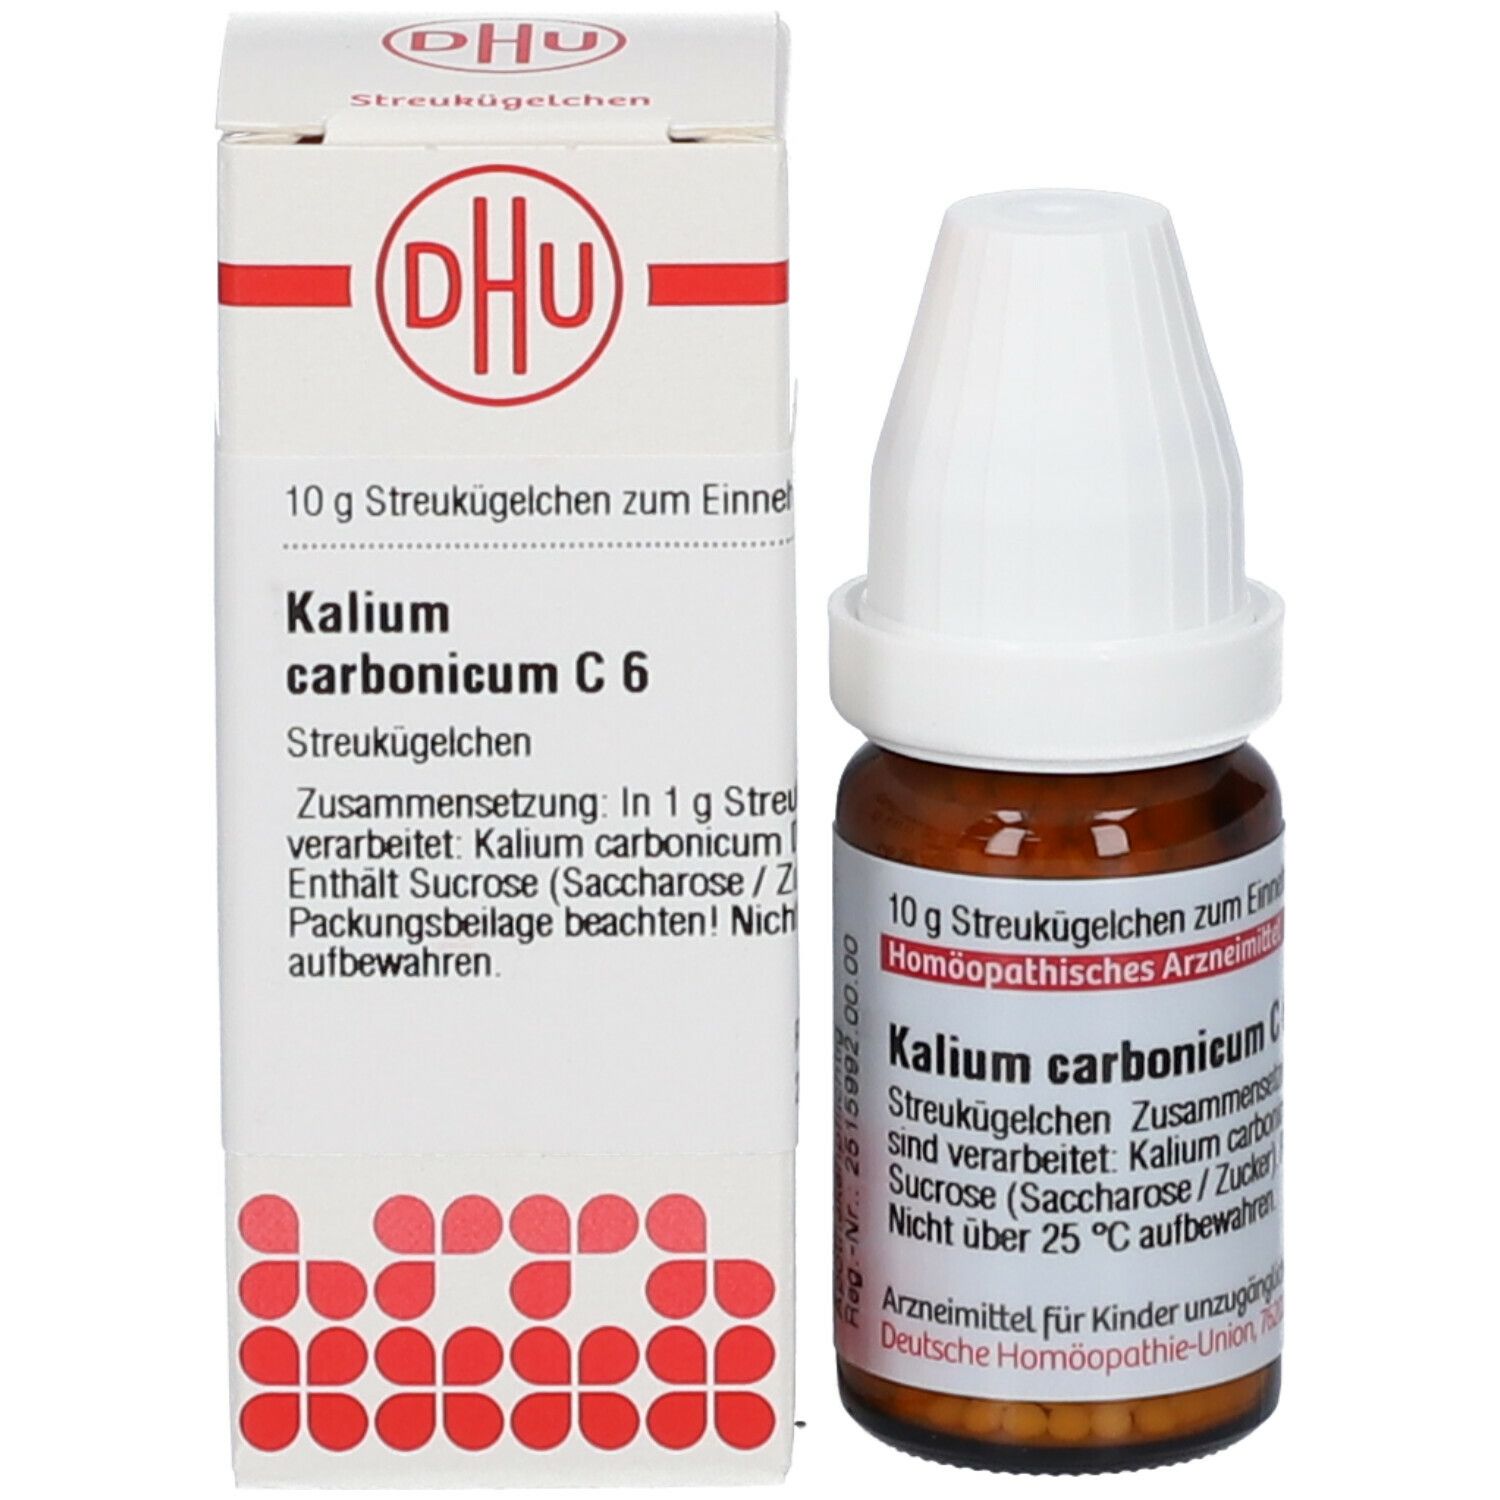 DHU Kalium Carbonicum C6